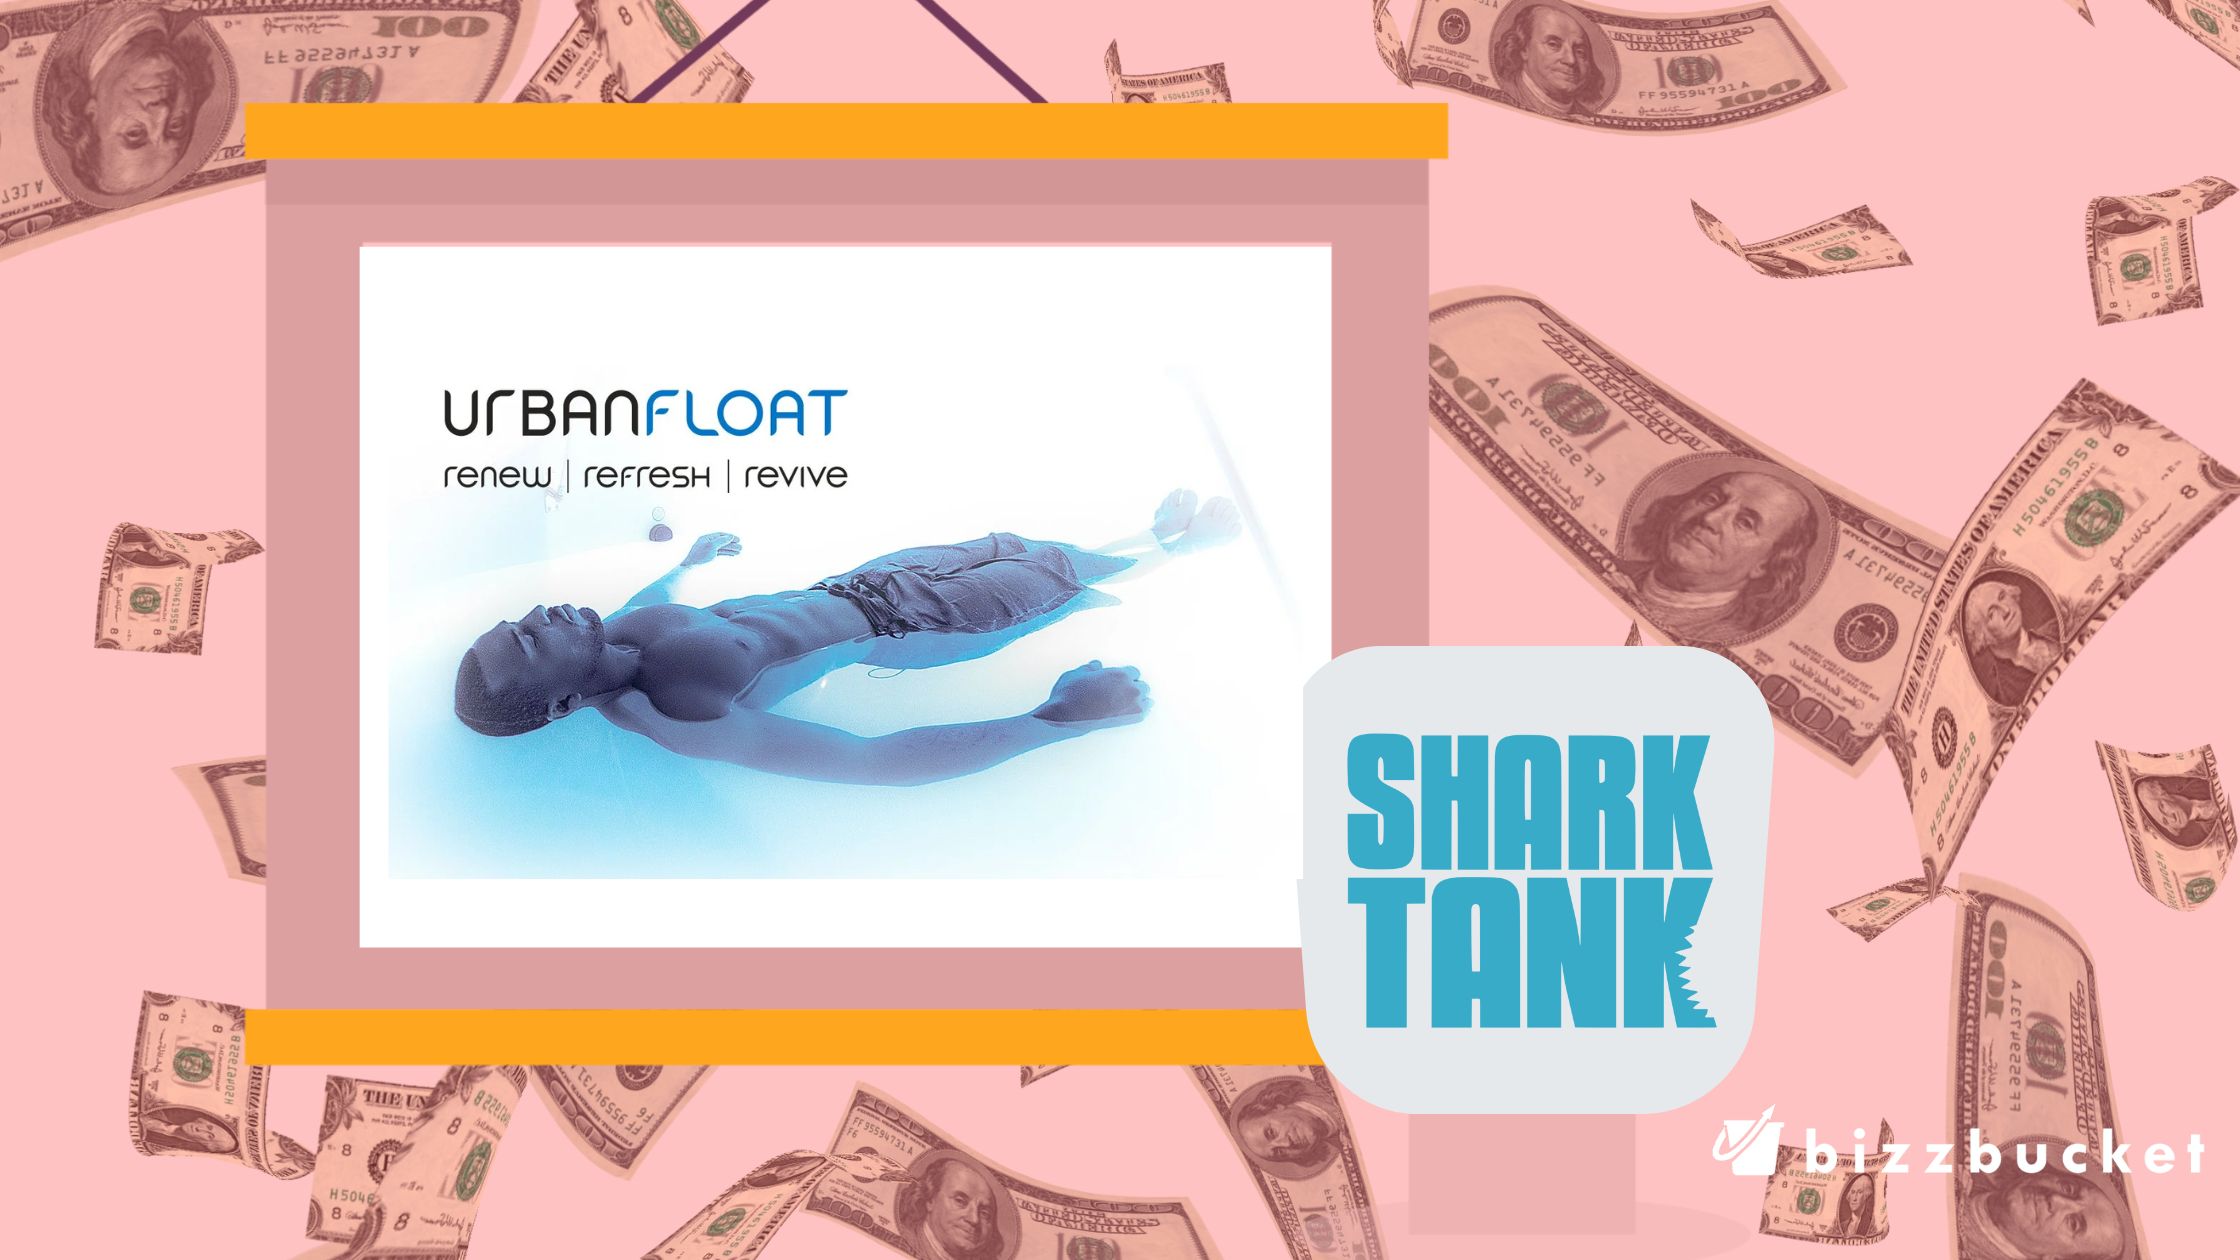 Urban Float shark tank update